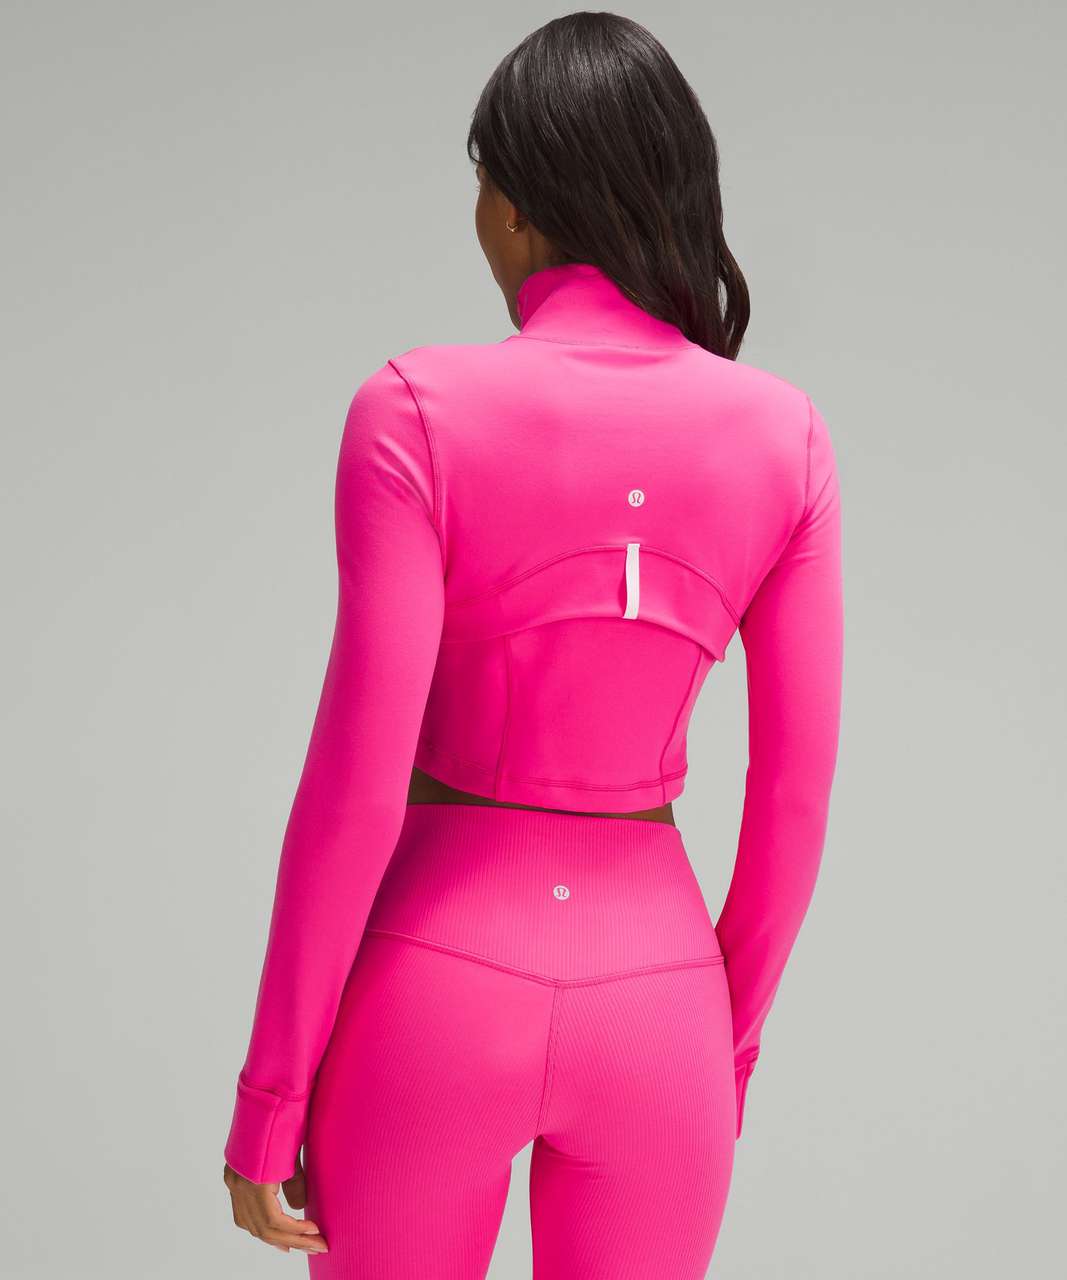 Hot Pink Blazer - Ruched Sleeve Blazer - Women's Blazer - Lulus